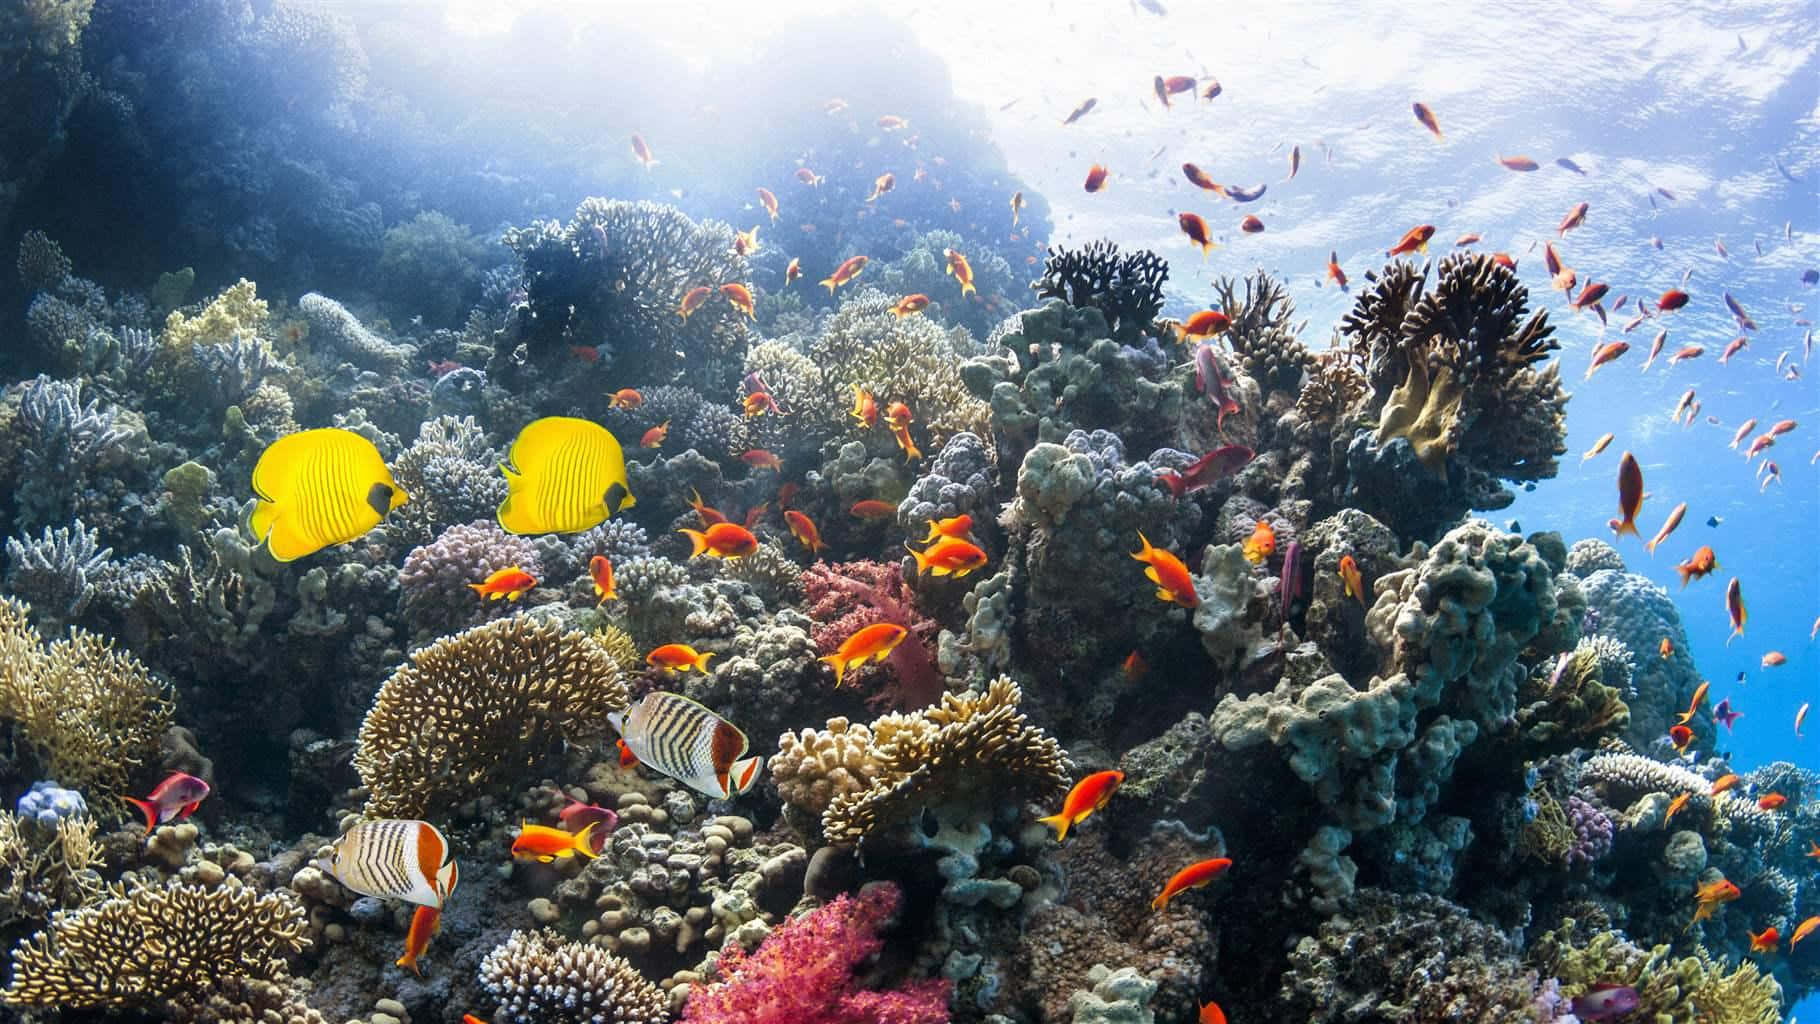 Immaginesottomarina Di Un Reef Corallino Con Pesci Gialli E Arancioni.